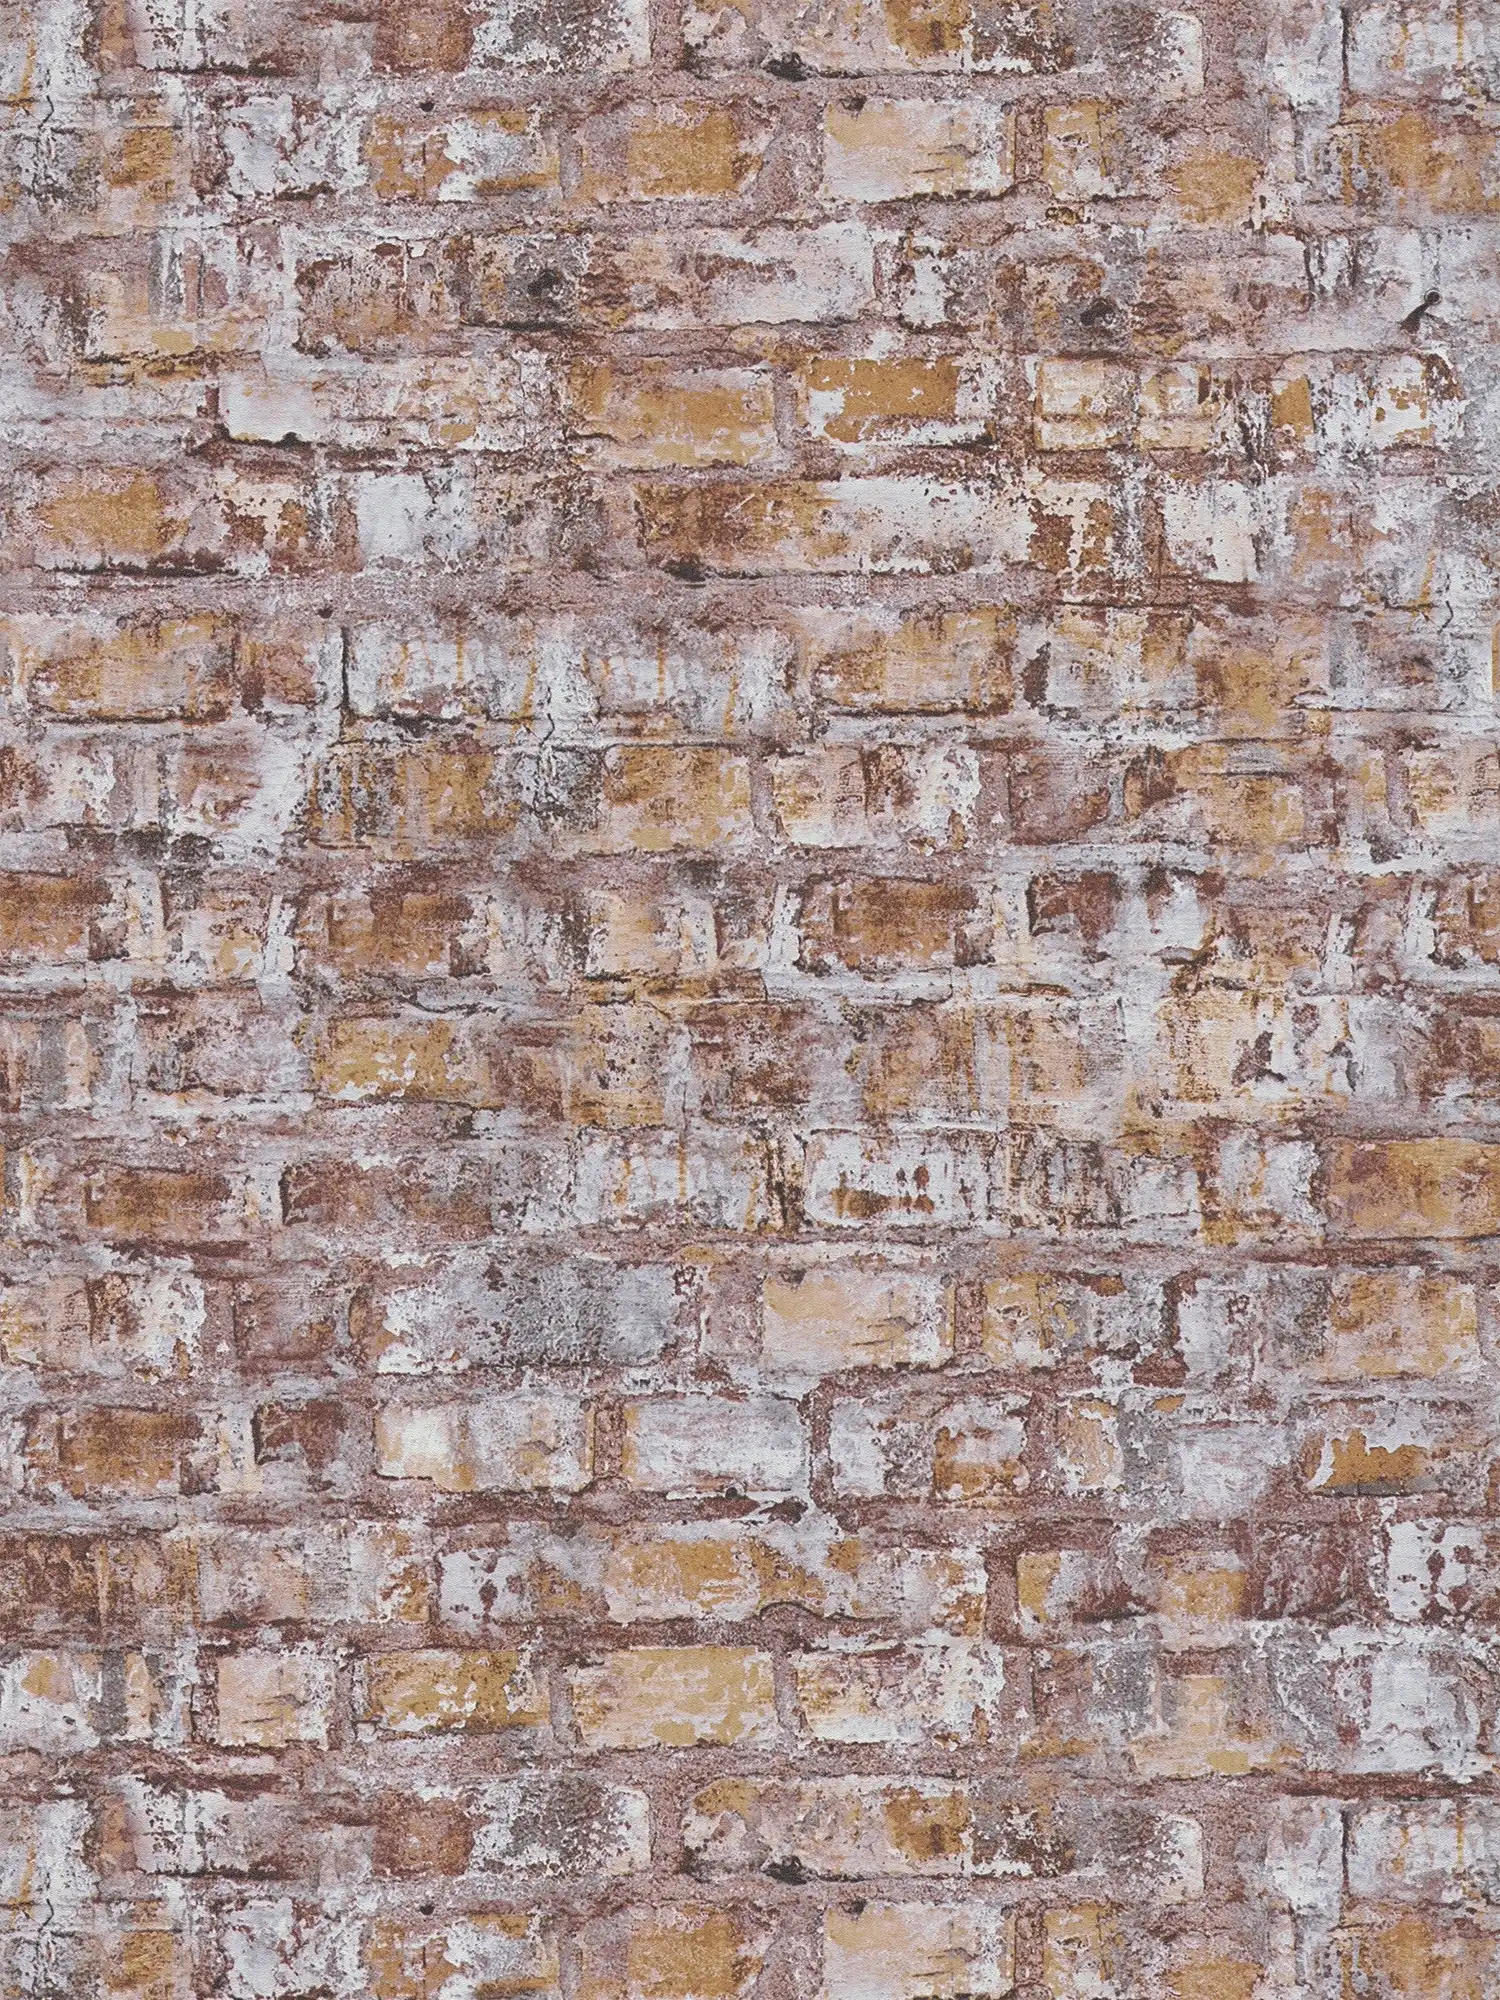 Vliesbehang in baksteenlook met muurmotief - grijs, bruin, wit, roest
